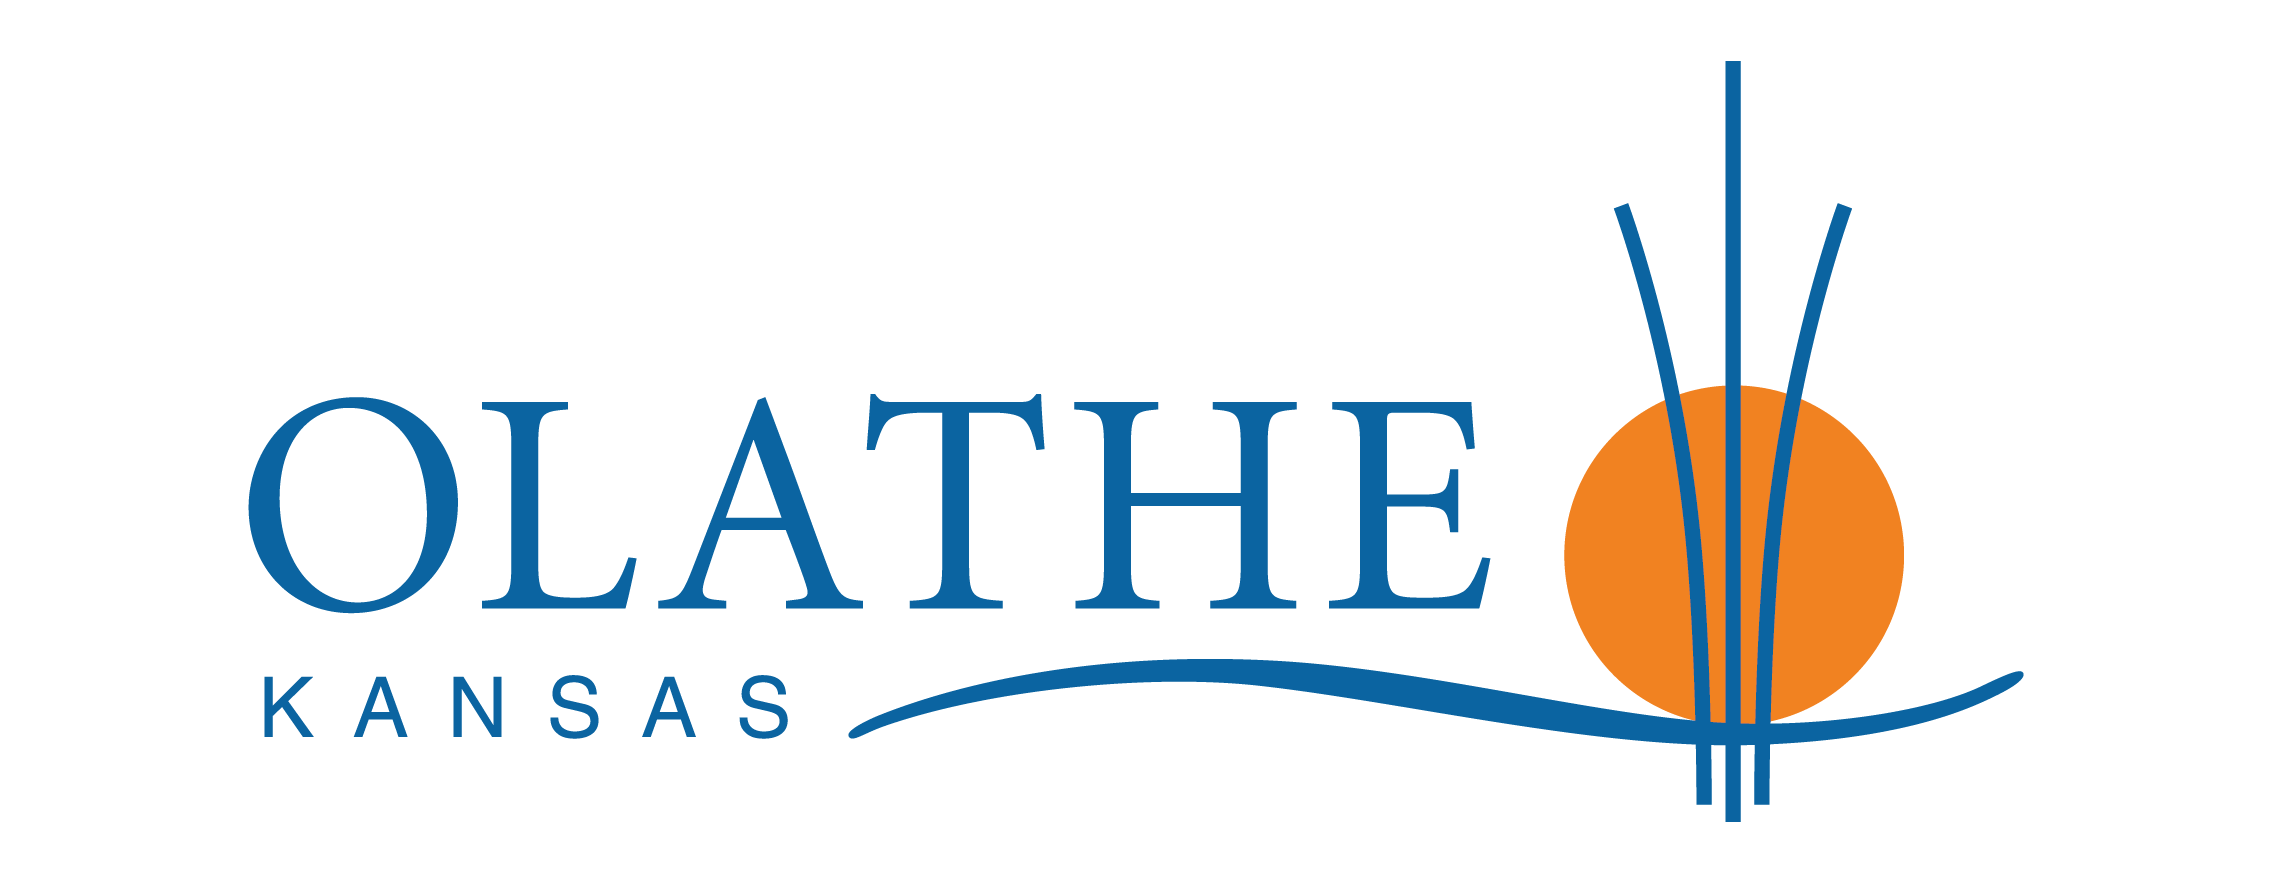 olathe-kansas-logo